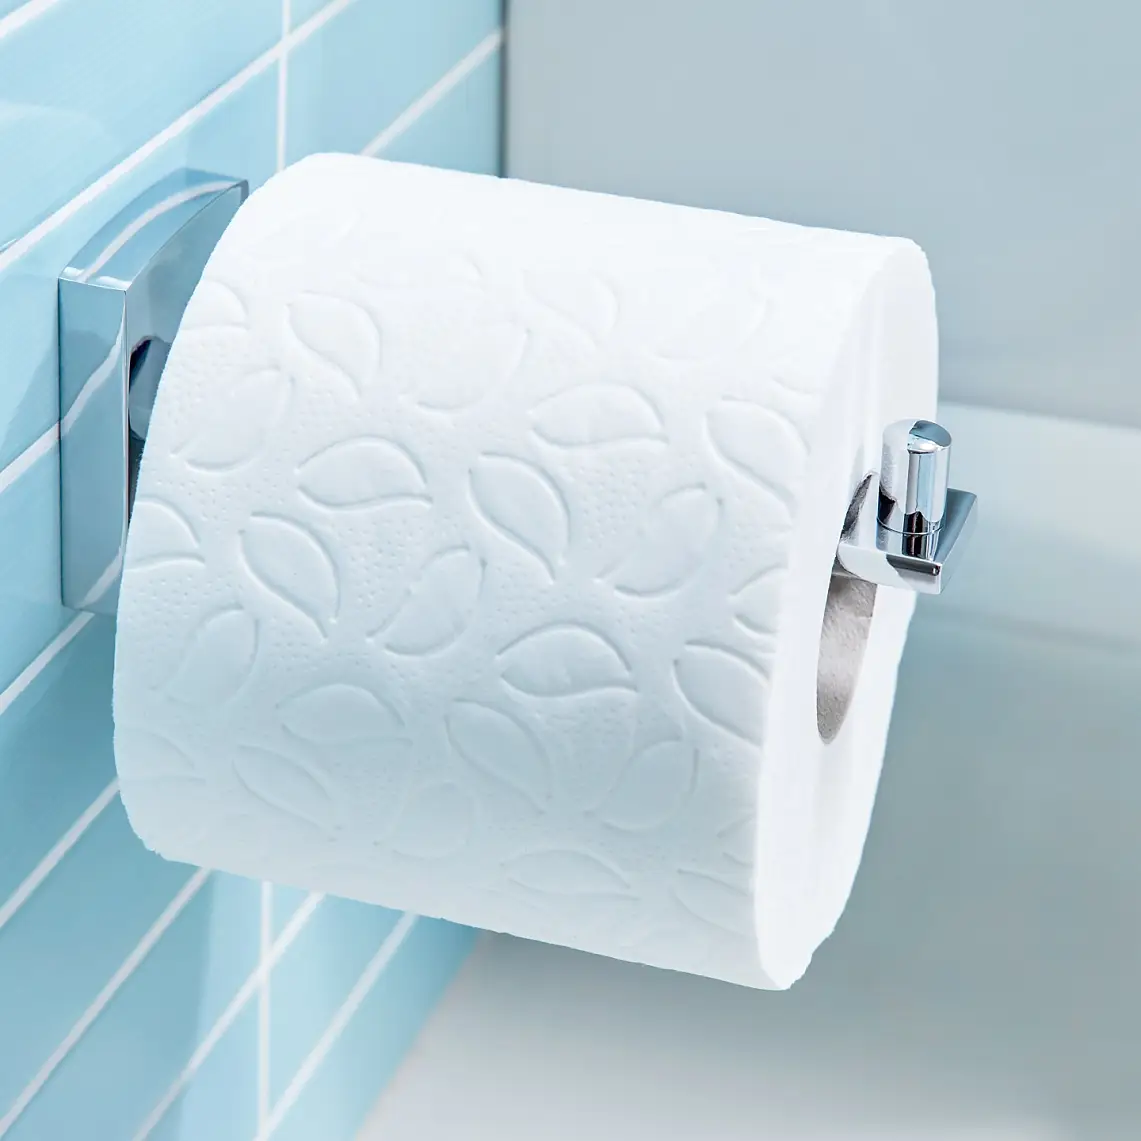 Jednoduchý design pro uchovávání roliček toaletního papíru tam, kde je nejvíce potřebujete.